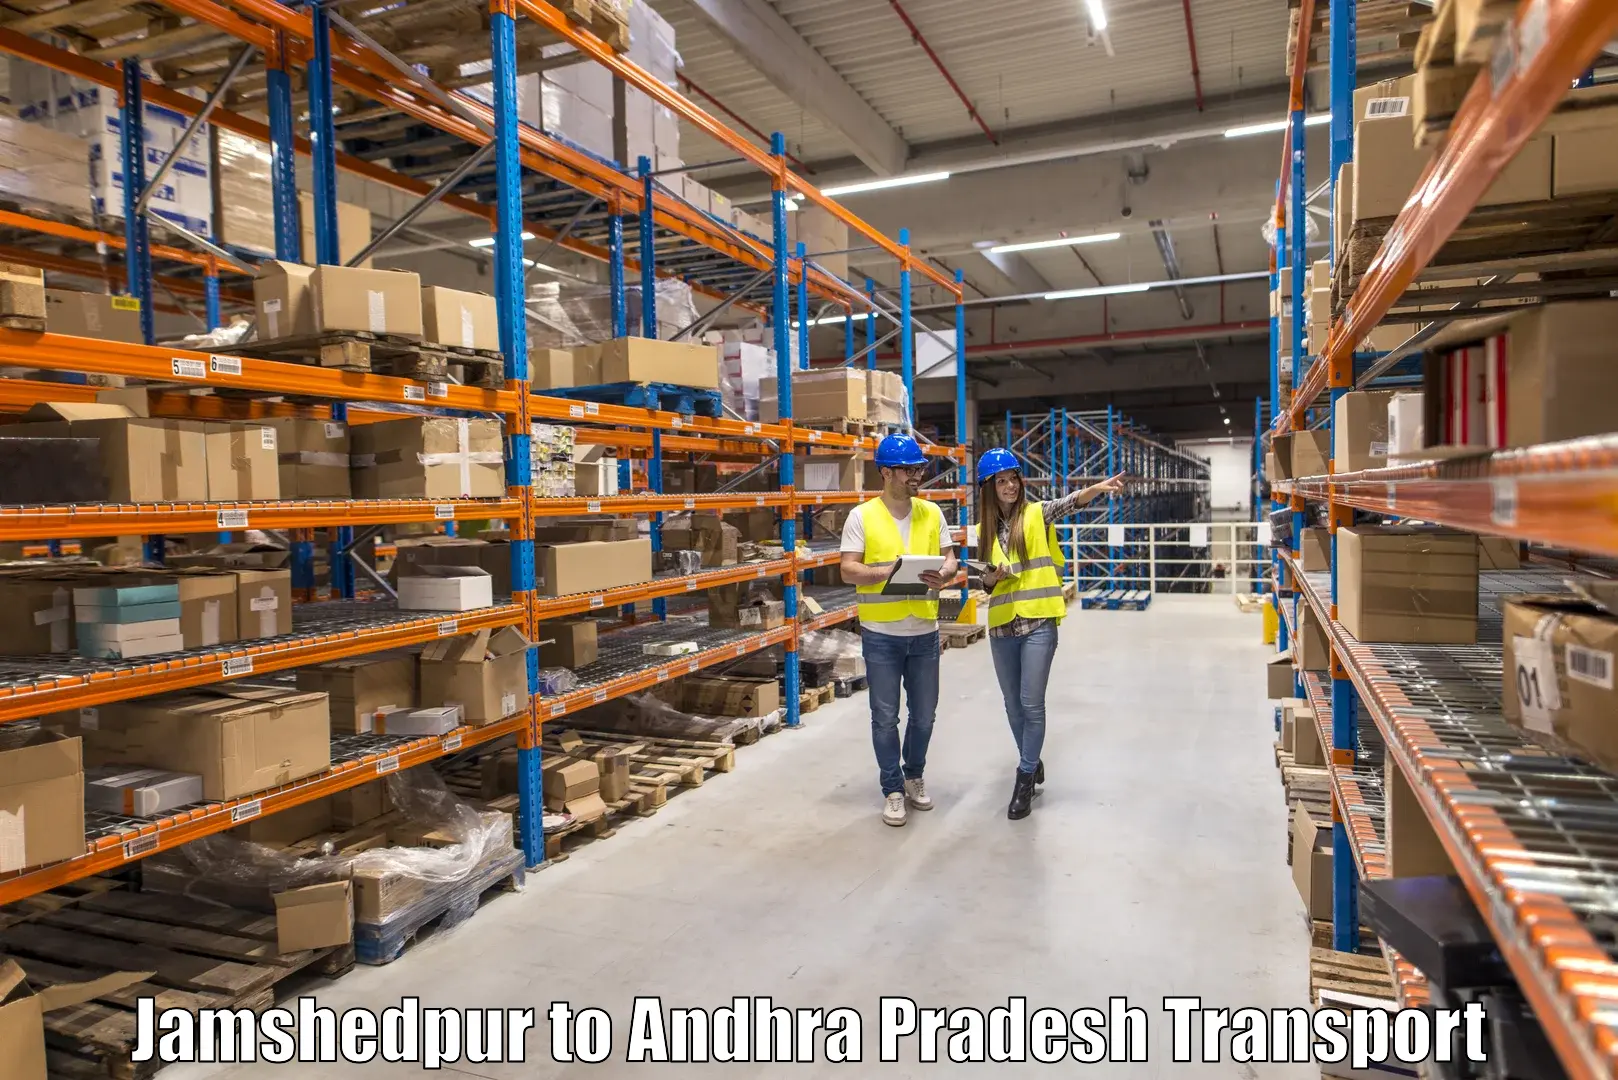 Parcel transport services Jamshedpur to Andhra Pradesh